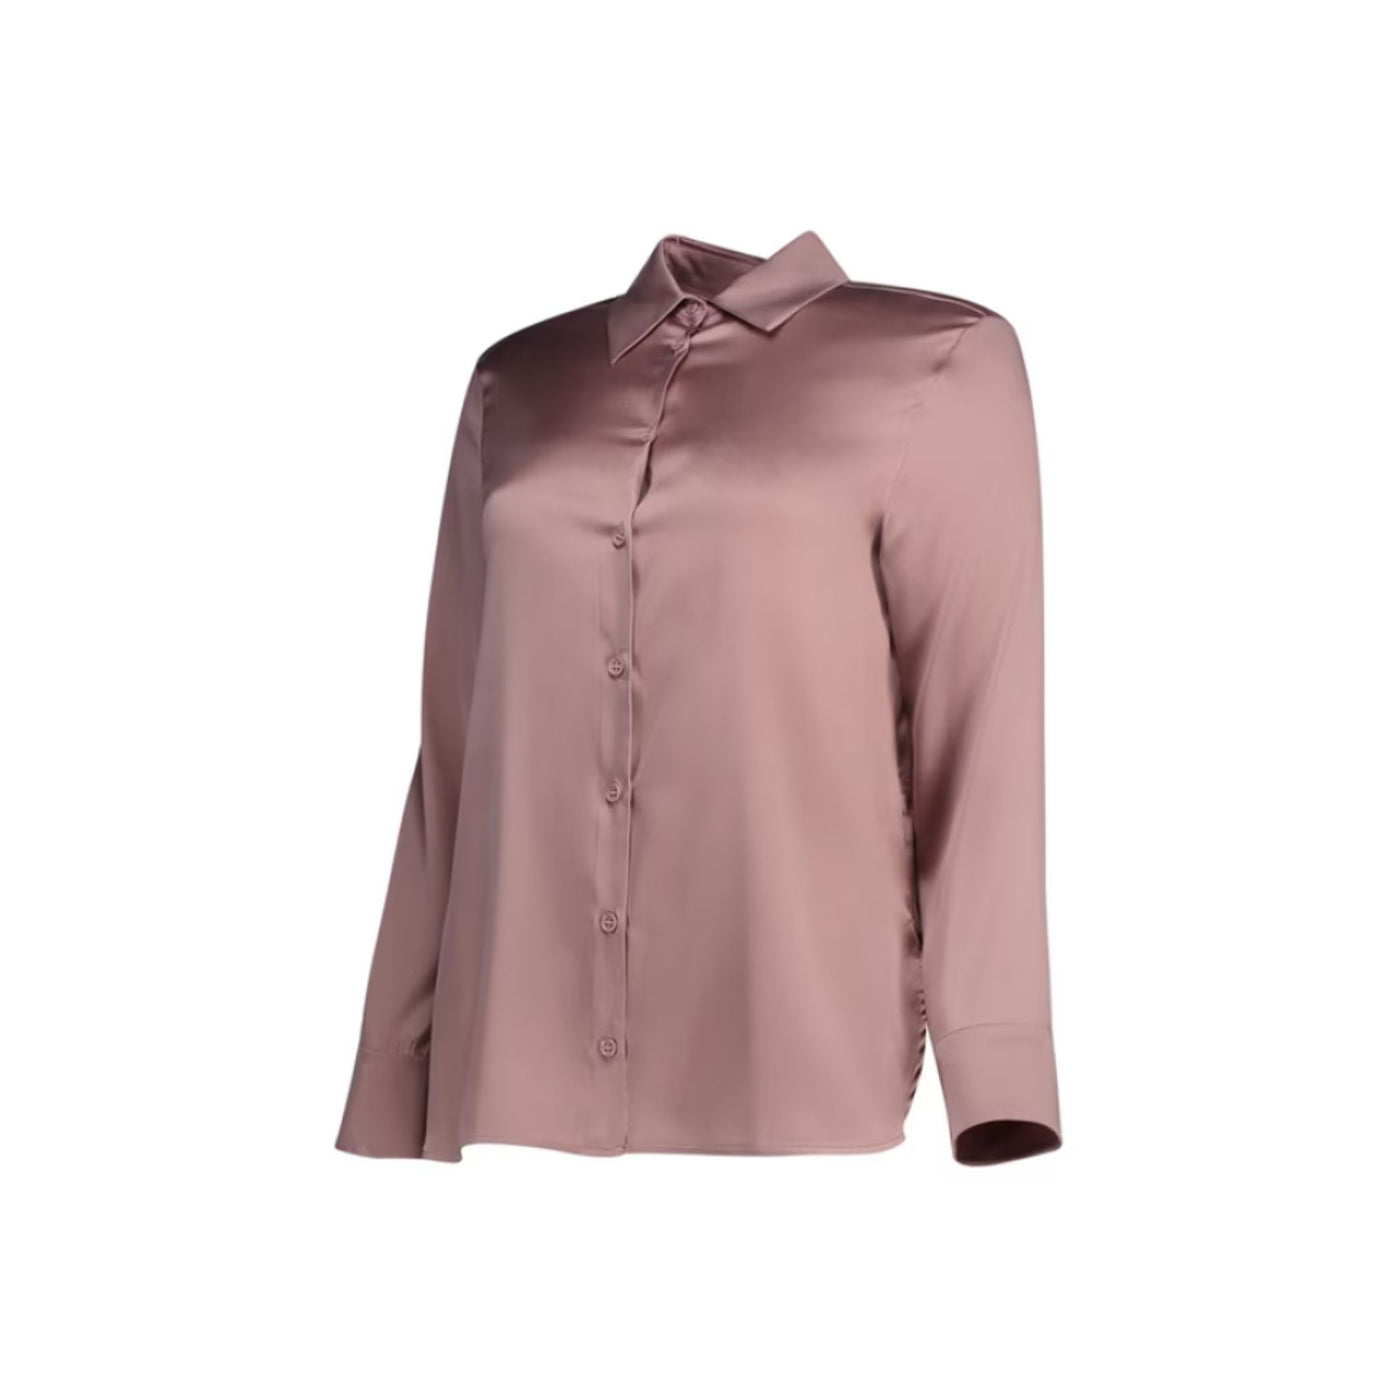 Camicia Donna in seta Rosa dal design classico